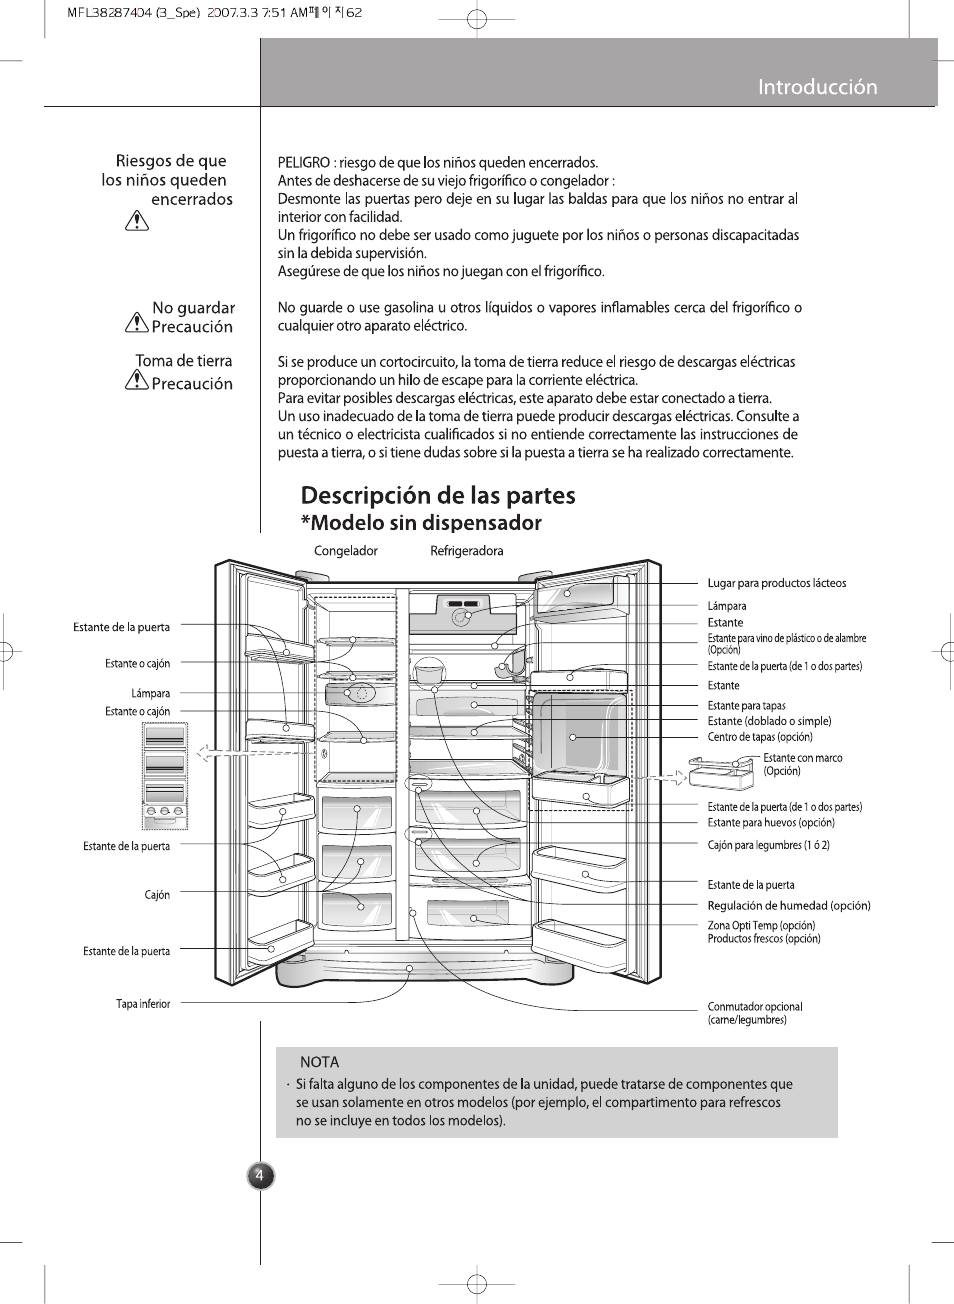 Descripción de las partes, Modelo sin dispensador | LG GRB2376EXR Manual del usuario | Página 4 / 36